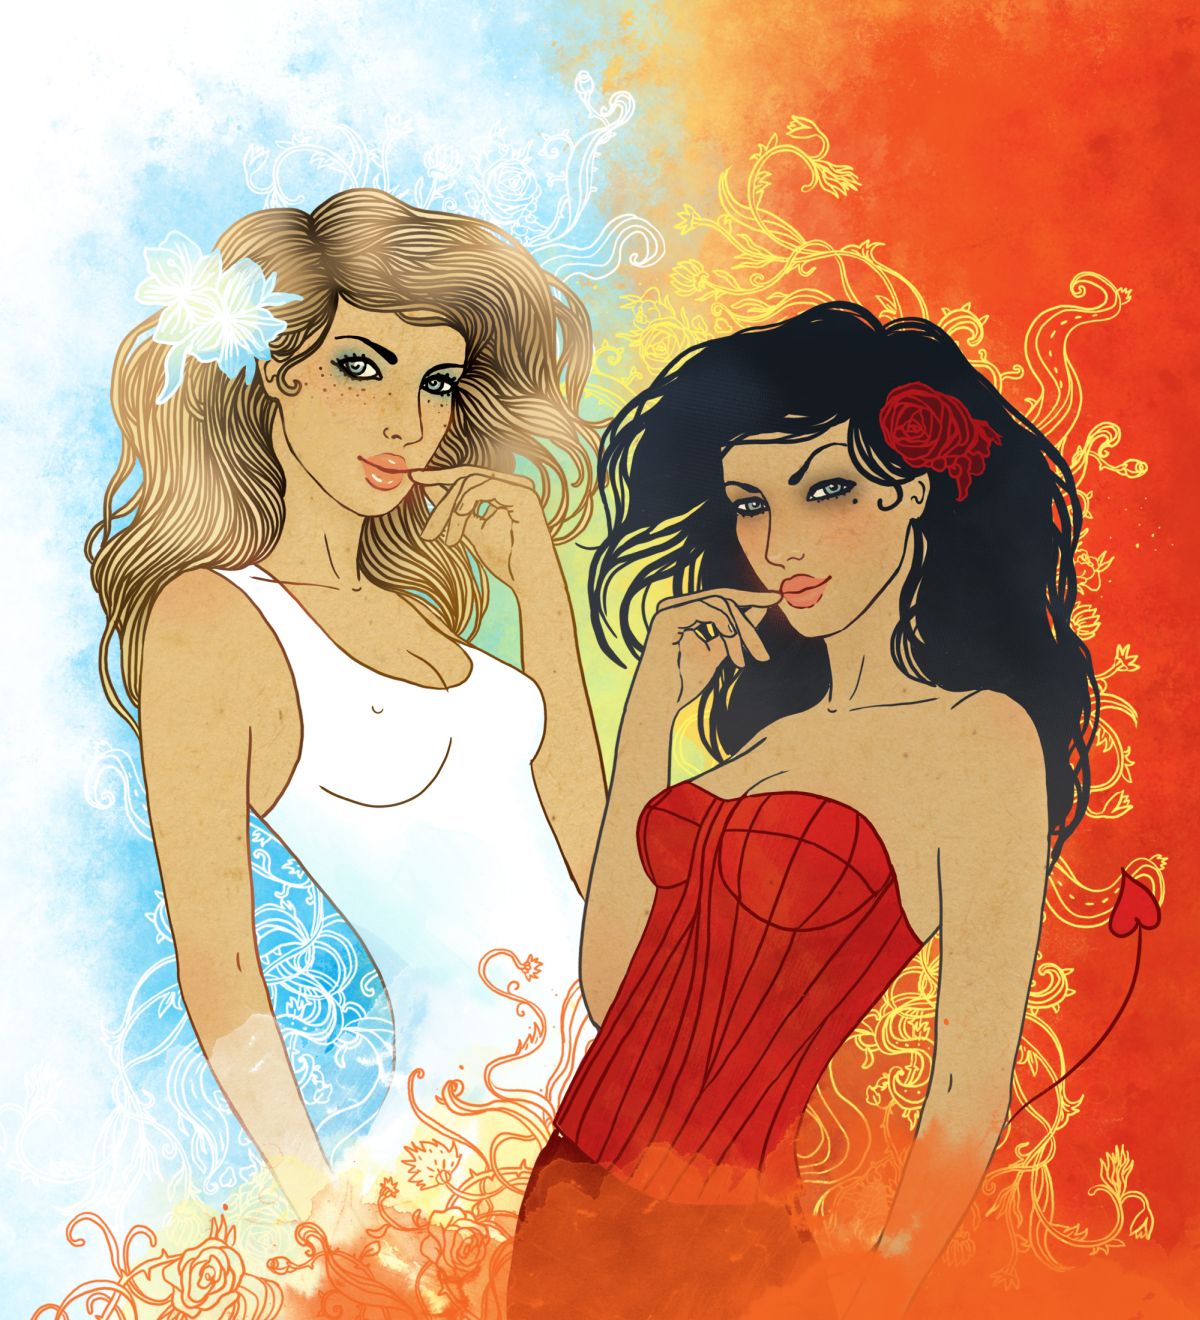 Două femei superbe, una îmbrăcată în alb și alta în roșu, ilustează zodia Gemeni.